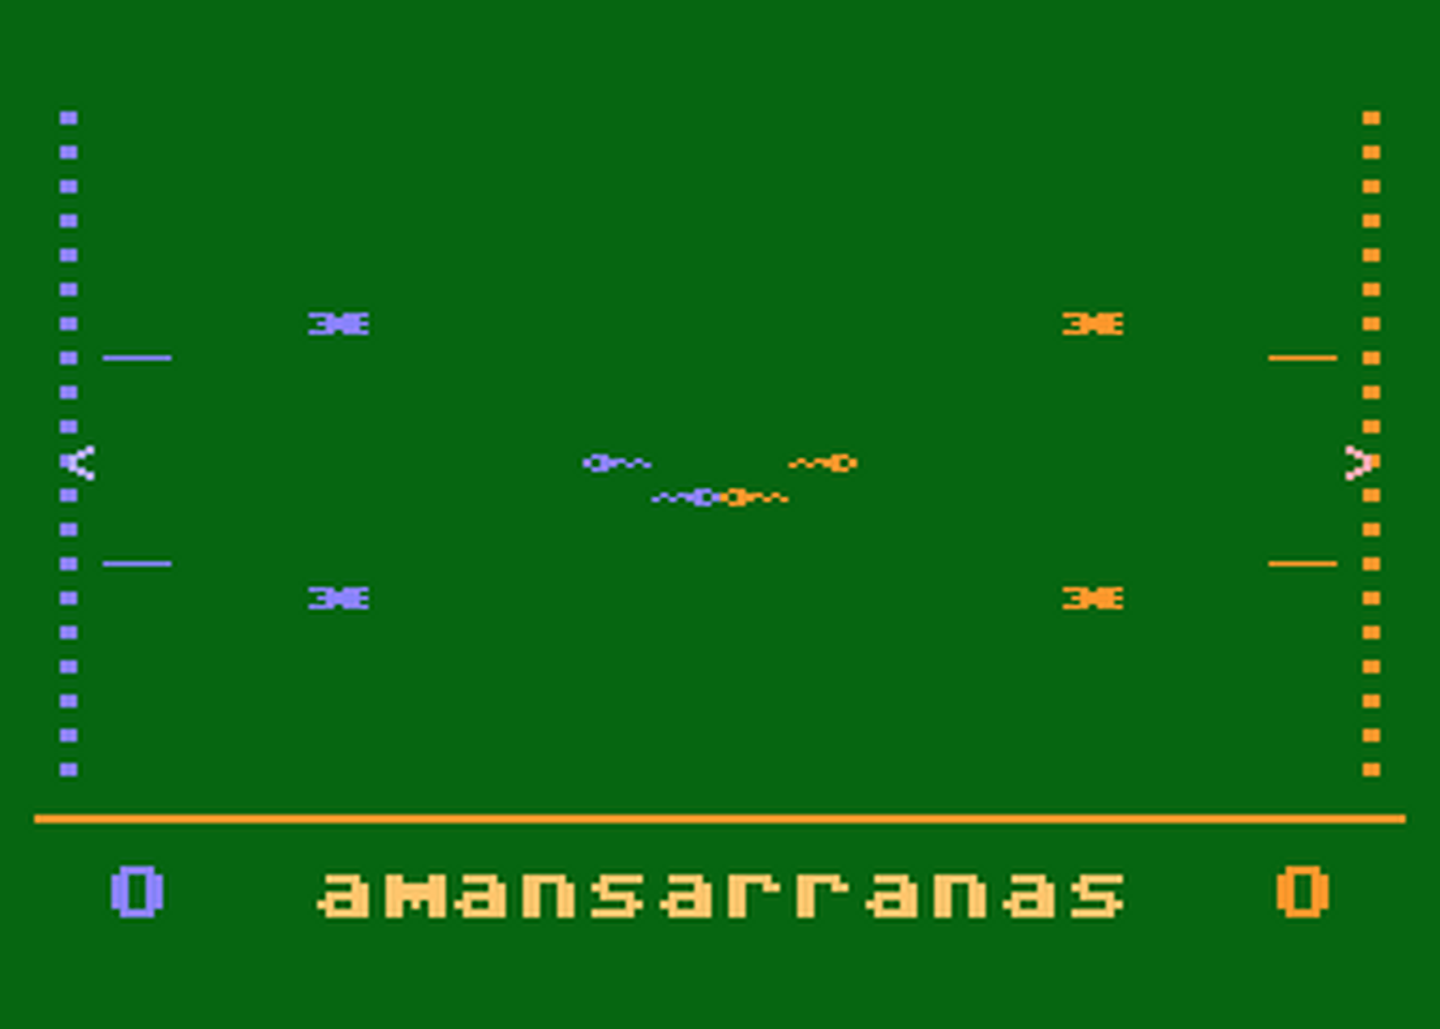 Atari GameBase Amansarranas APX 1983